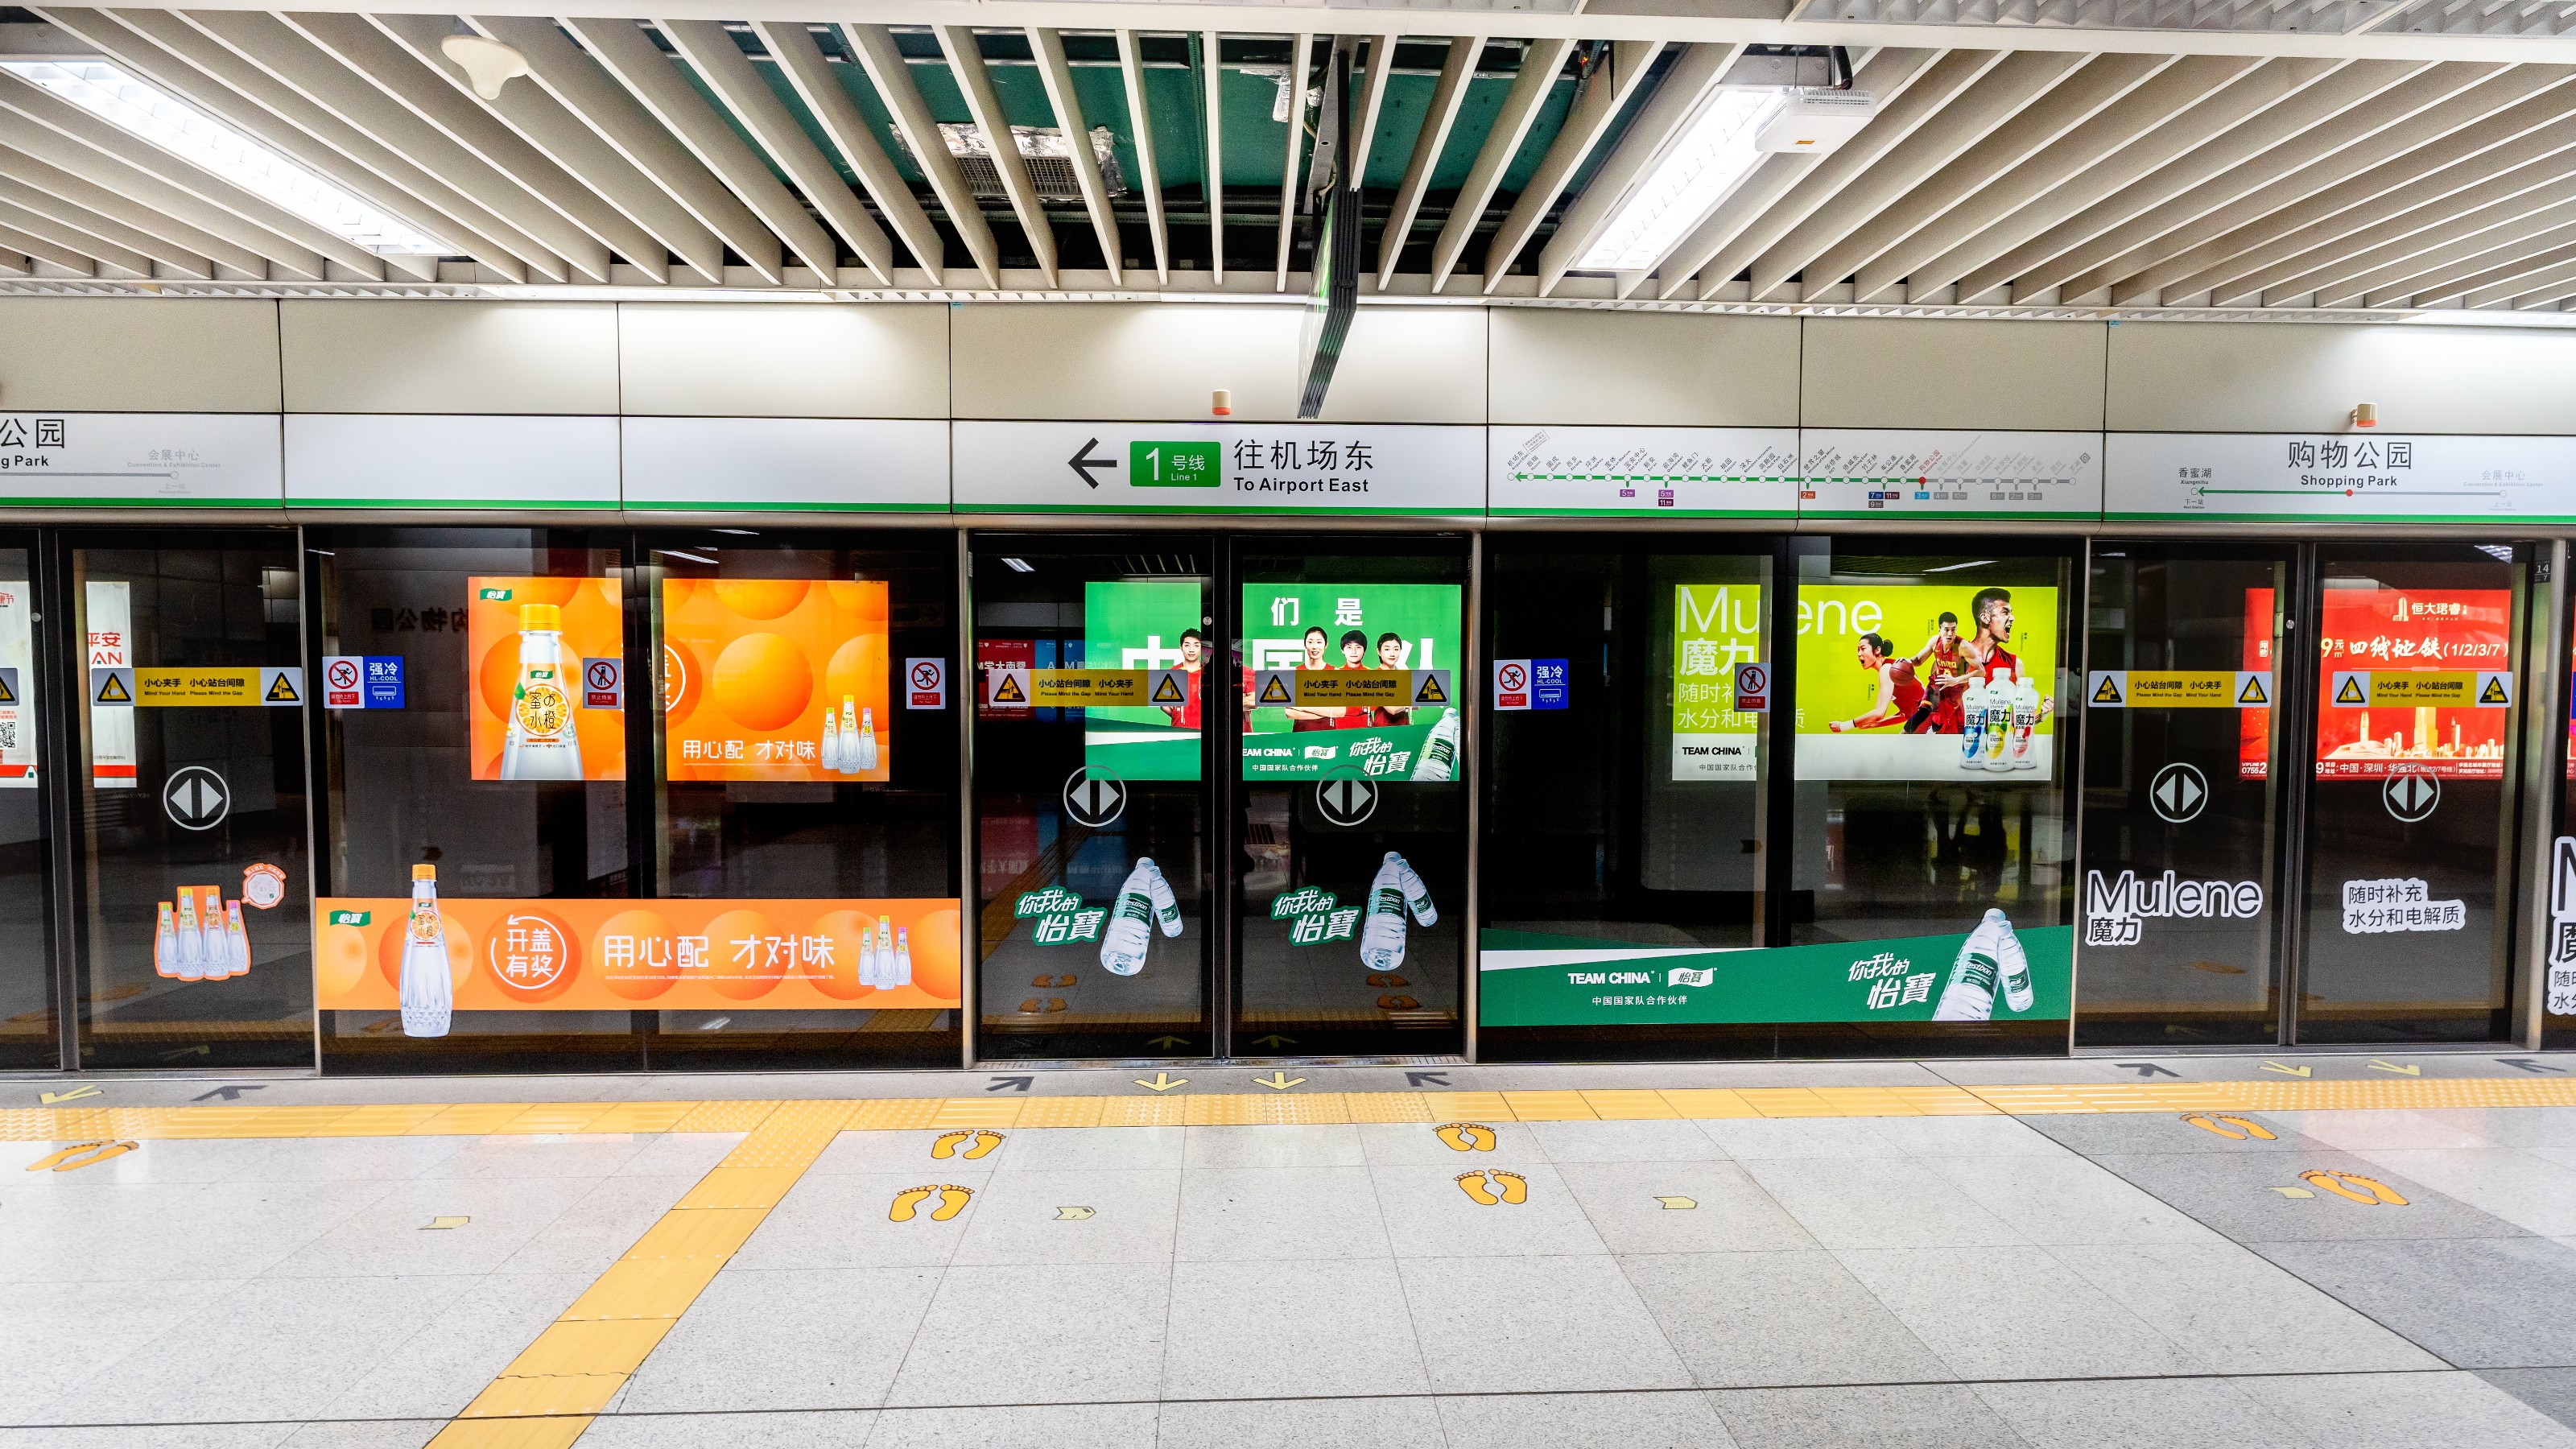 借助深圳地铁广告，深圳广告主在城市化进程中实现营销优势